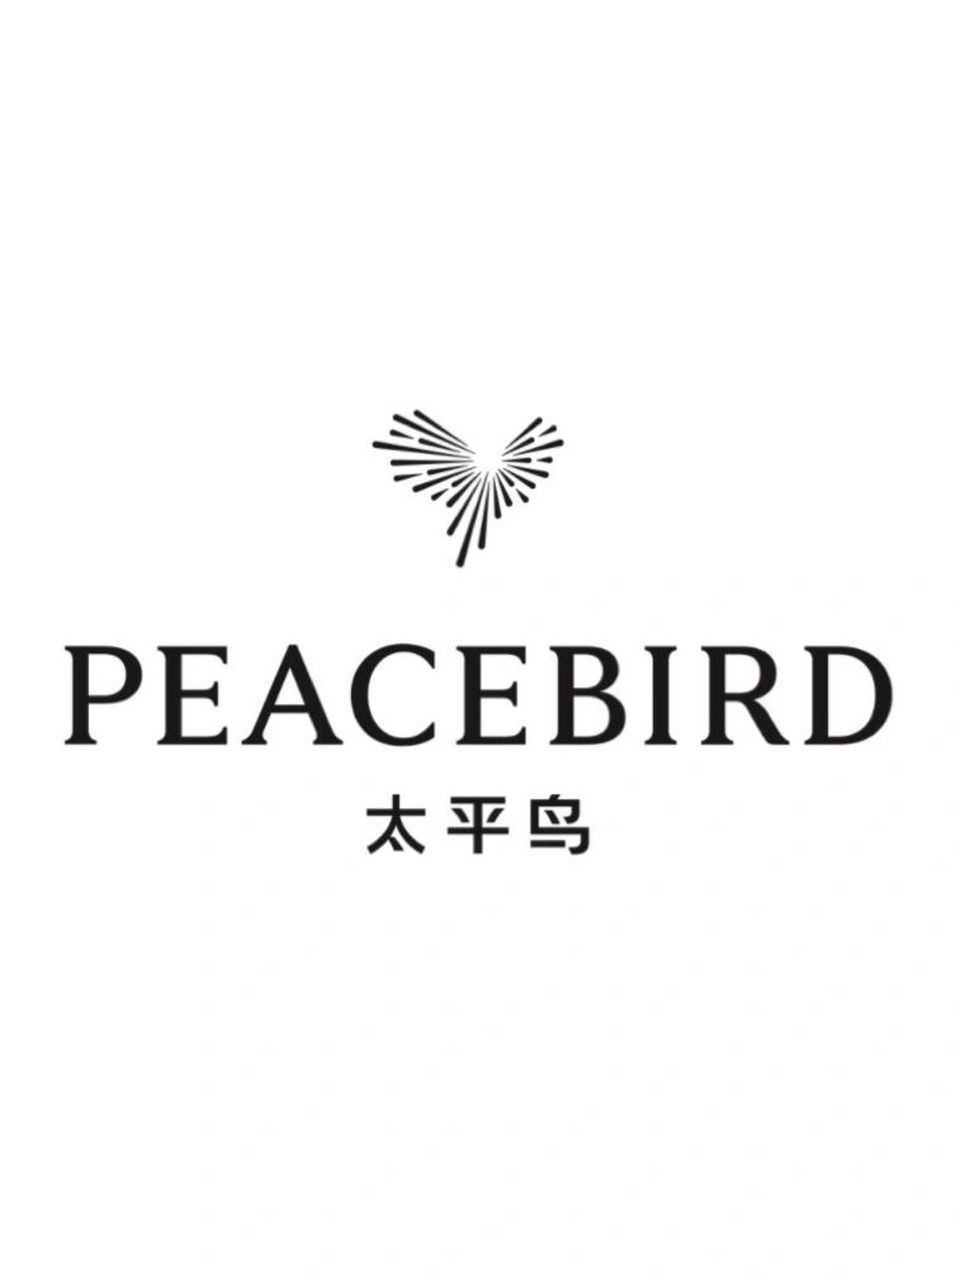 创业伙伴,以象征爱与和平的鸽子为原型,创建了peacebird太平鸟品牌